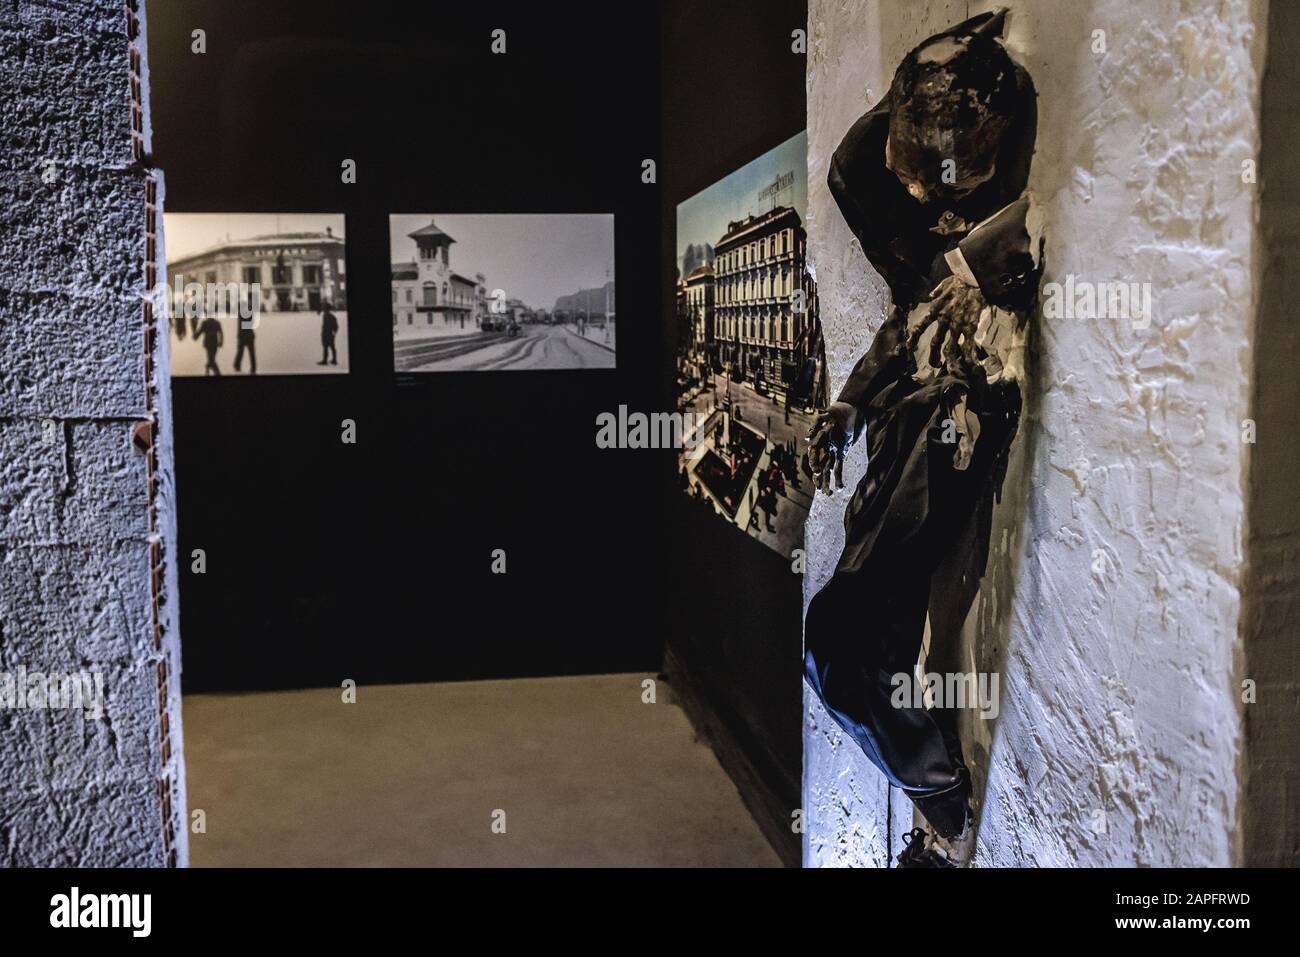 Intérieur du musée Mafia, partie du musée civique de la ville de Salemi située dans la province de Trapani dans le sud-ouest de la Sicile, en Italie Banque D'Images